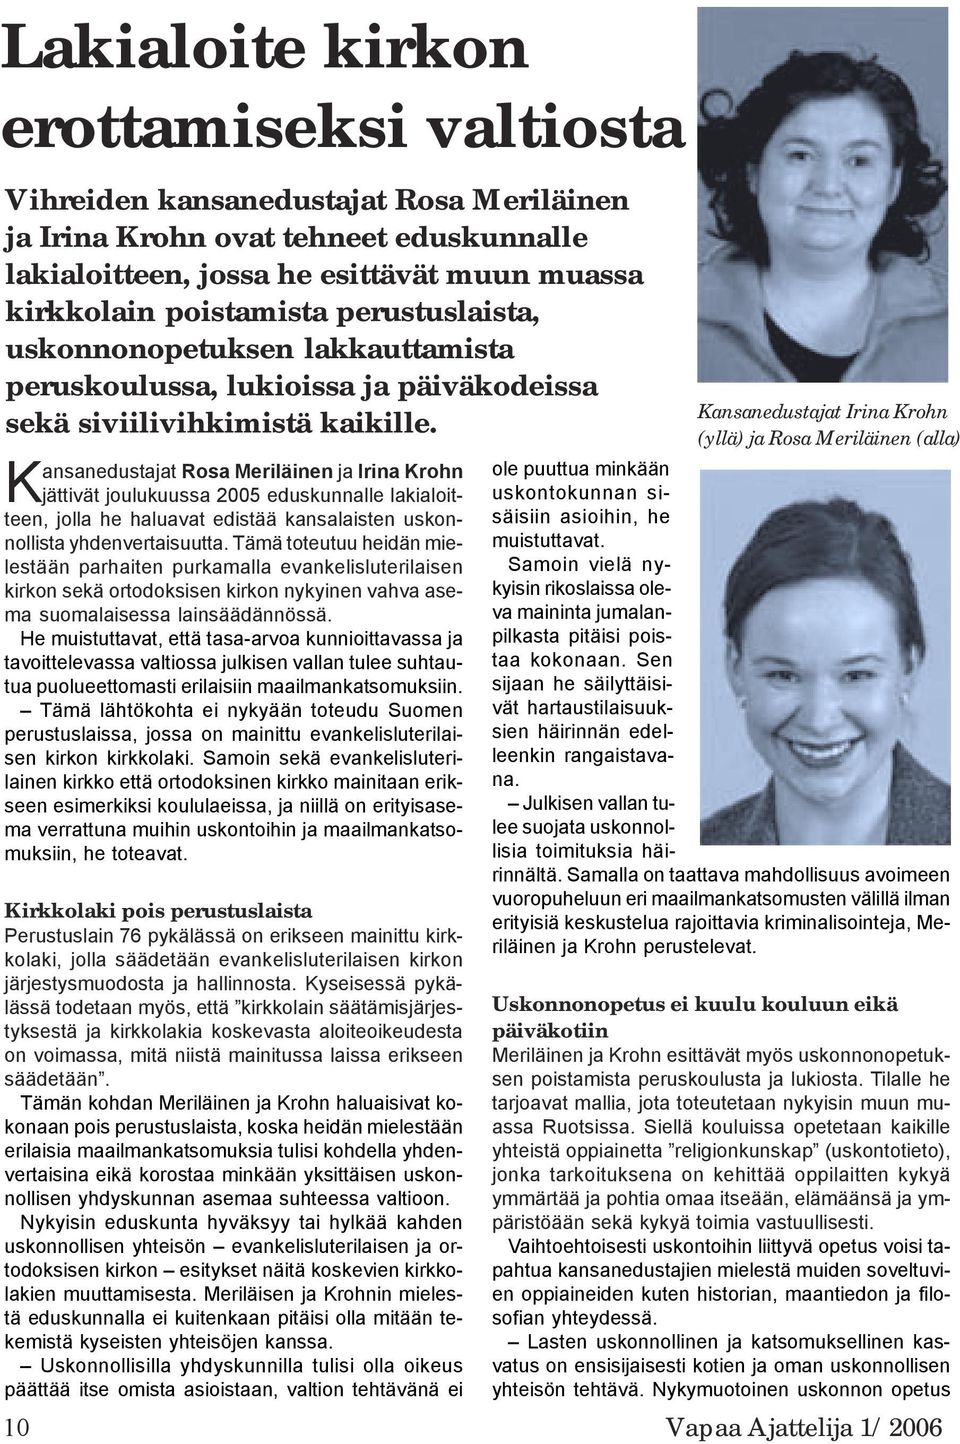 Kansanedustajat Rosa Meriläinen ja Irina Krohn jättivät joulukuussa 2005 eduskunnalle lakialoitteen, jolla he haluavat edistää kansalaisten uskonnollista yhdenvertaisuutta.